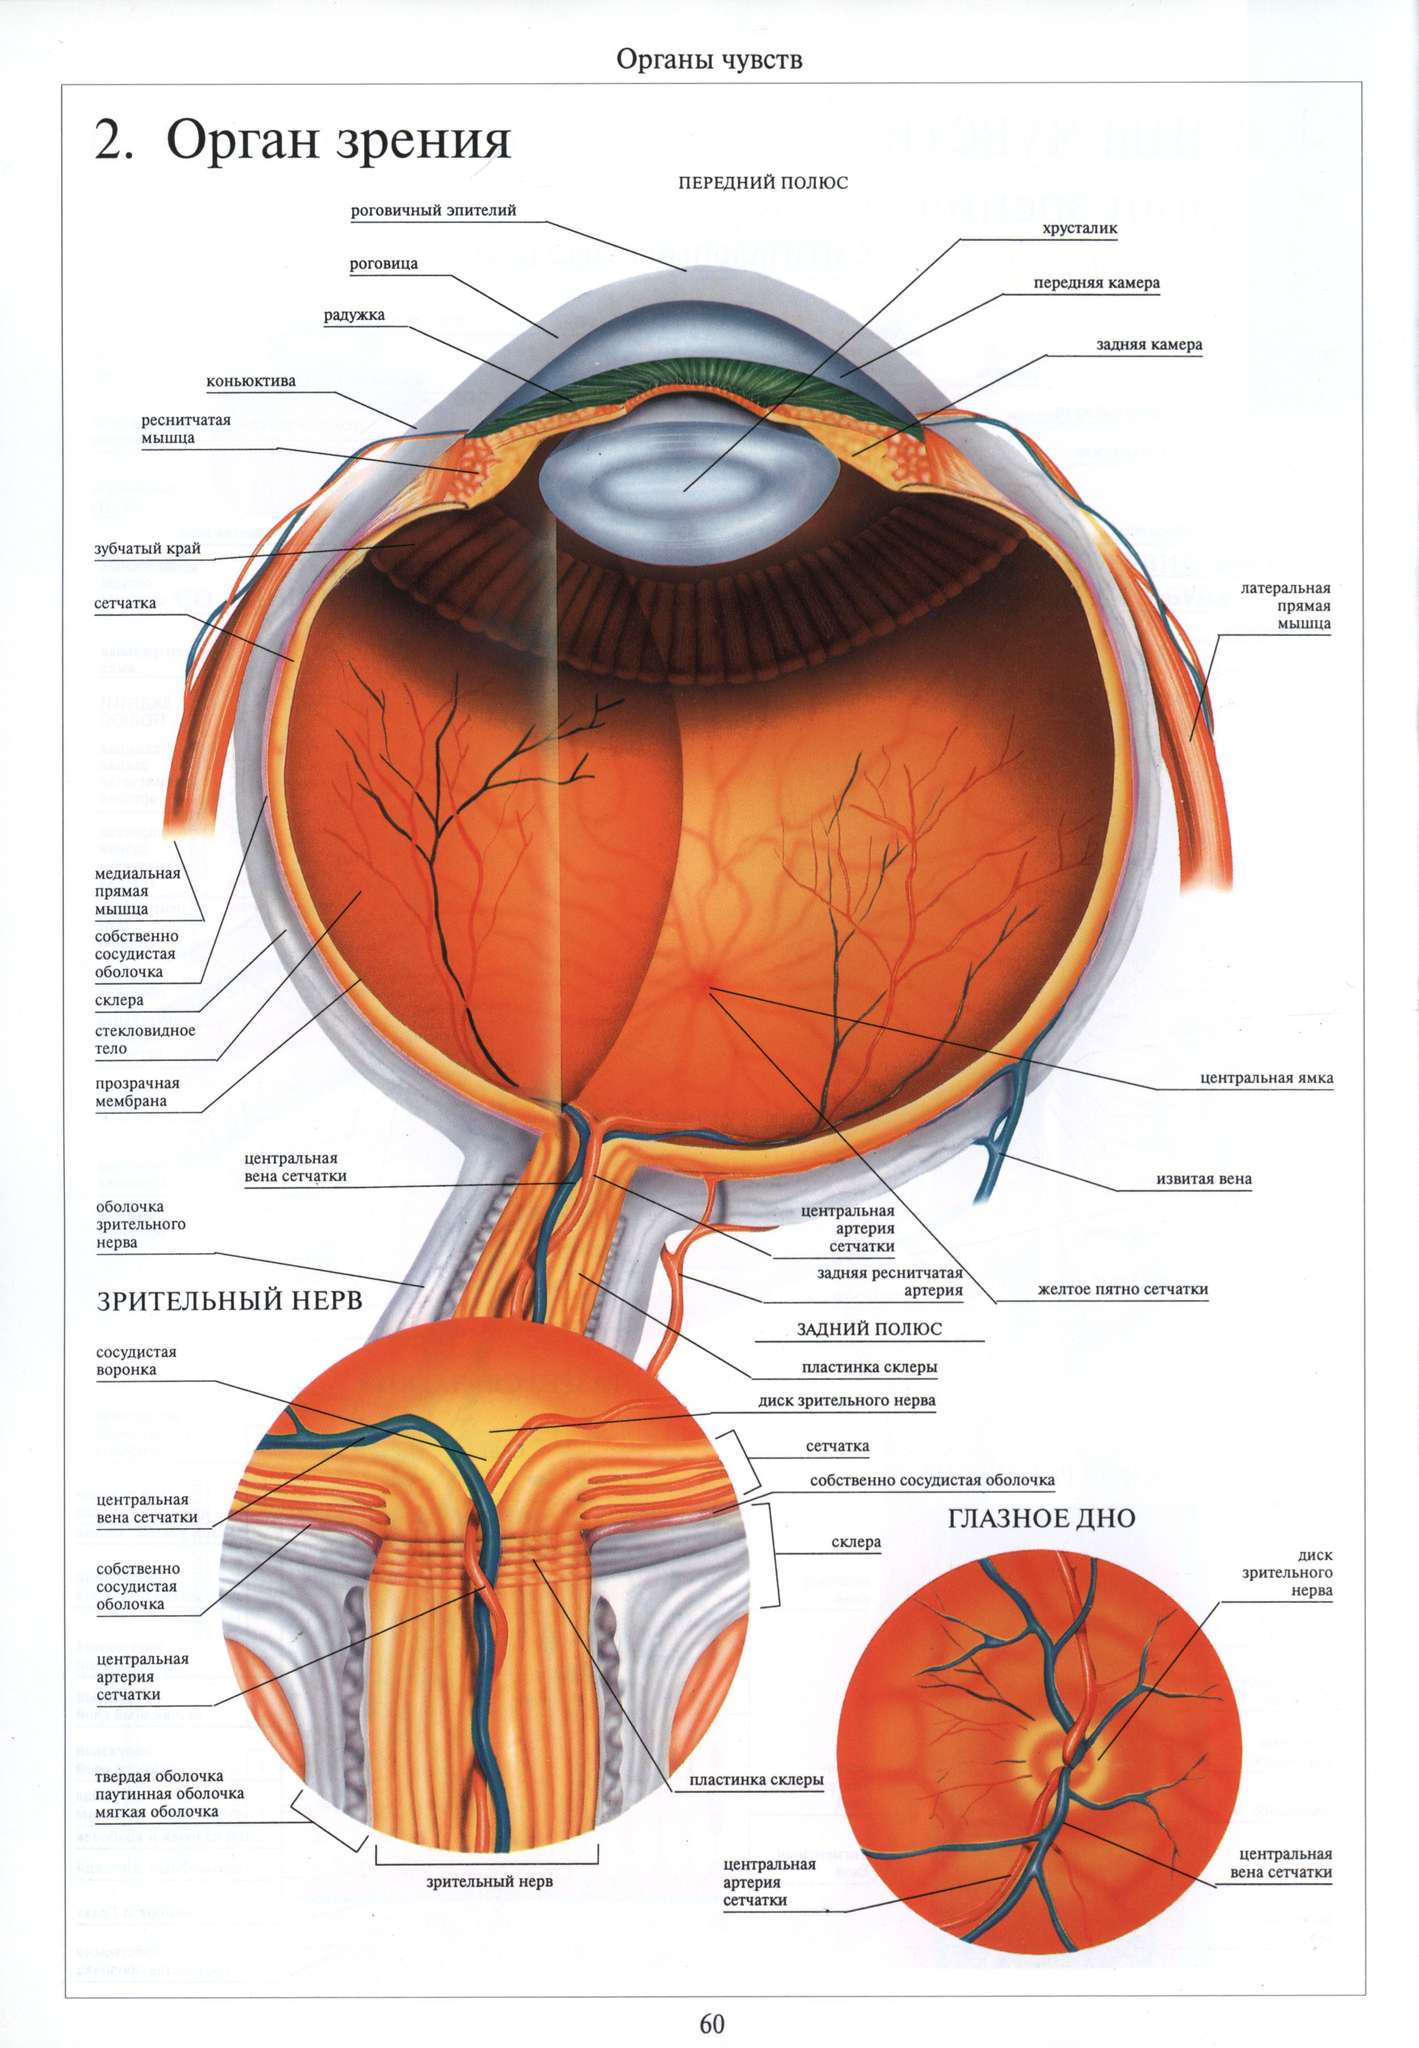 Сетчатка а в 2 3. Анатомия глазное яблоко атлас. Диск зрительного нерва сетчатки анатомия. Схема строения оболочек глазного яблока. Дно глазного яблока анатомия.